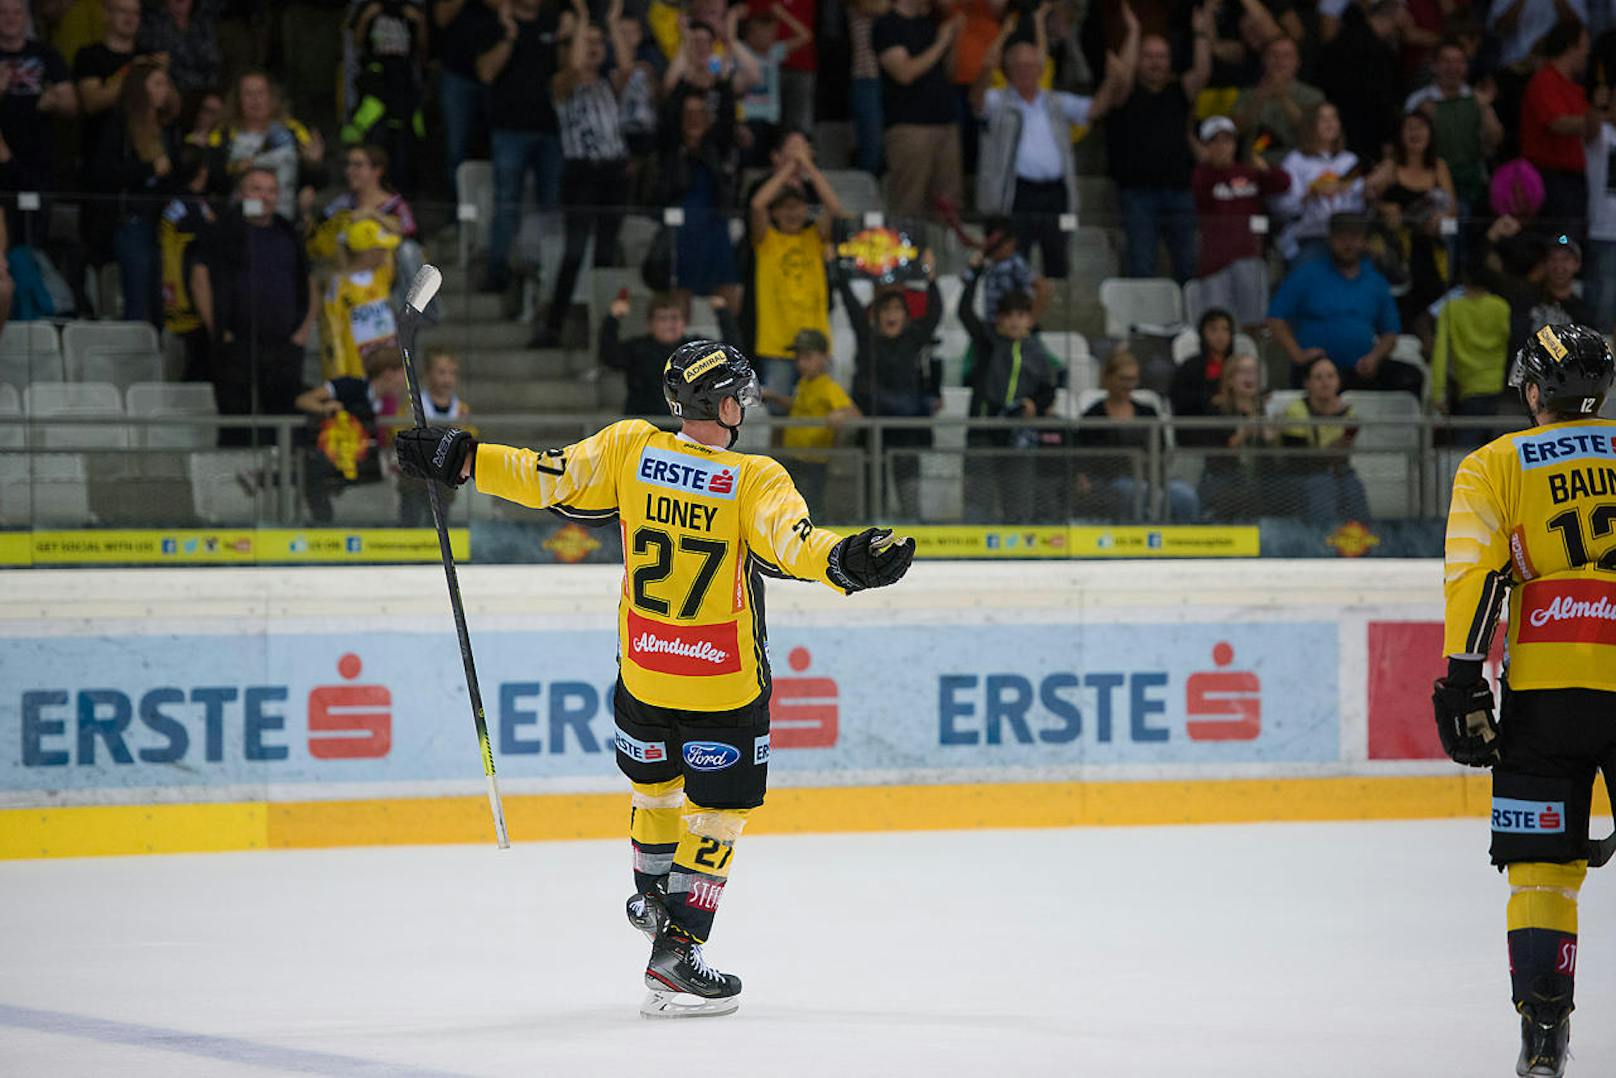 Ty Loney, der Eishockeyspieler der spusu Vienna Capitals, wird von der Menge bejubelt.